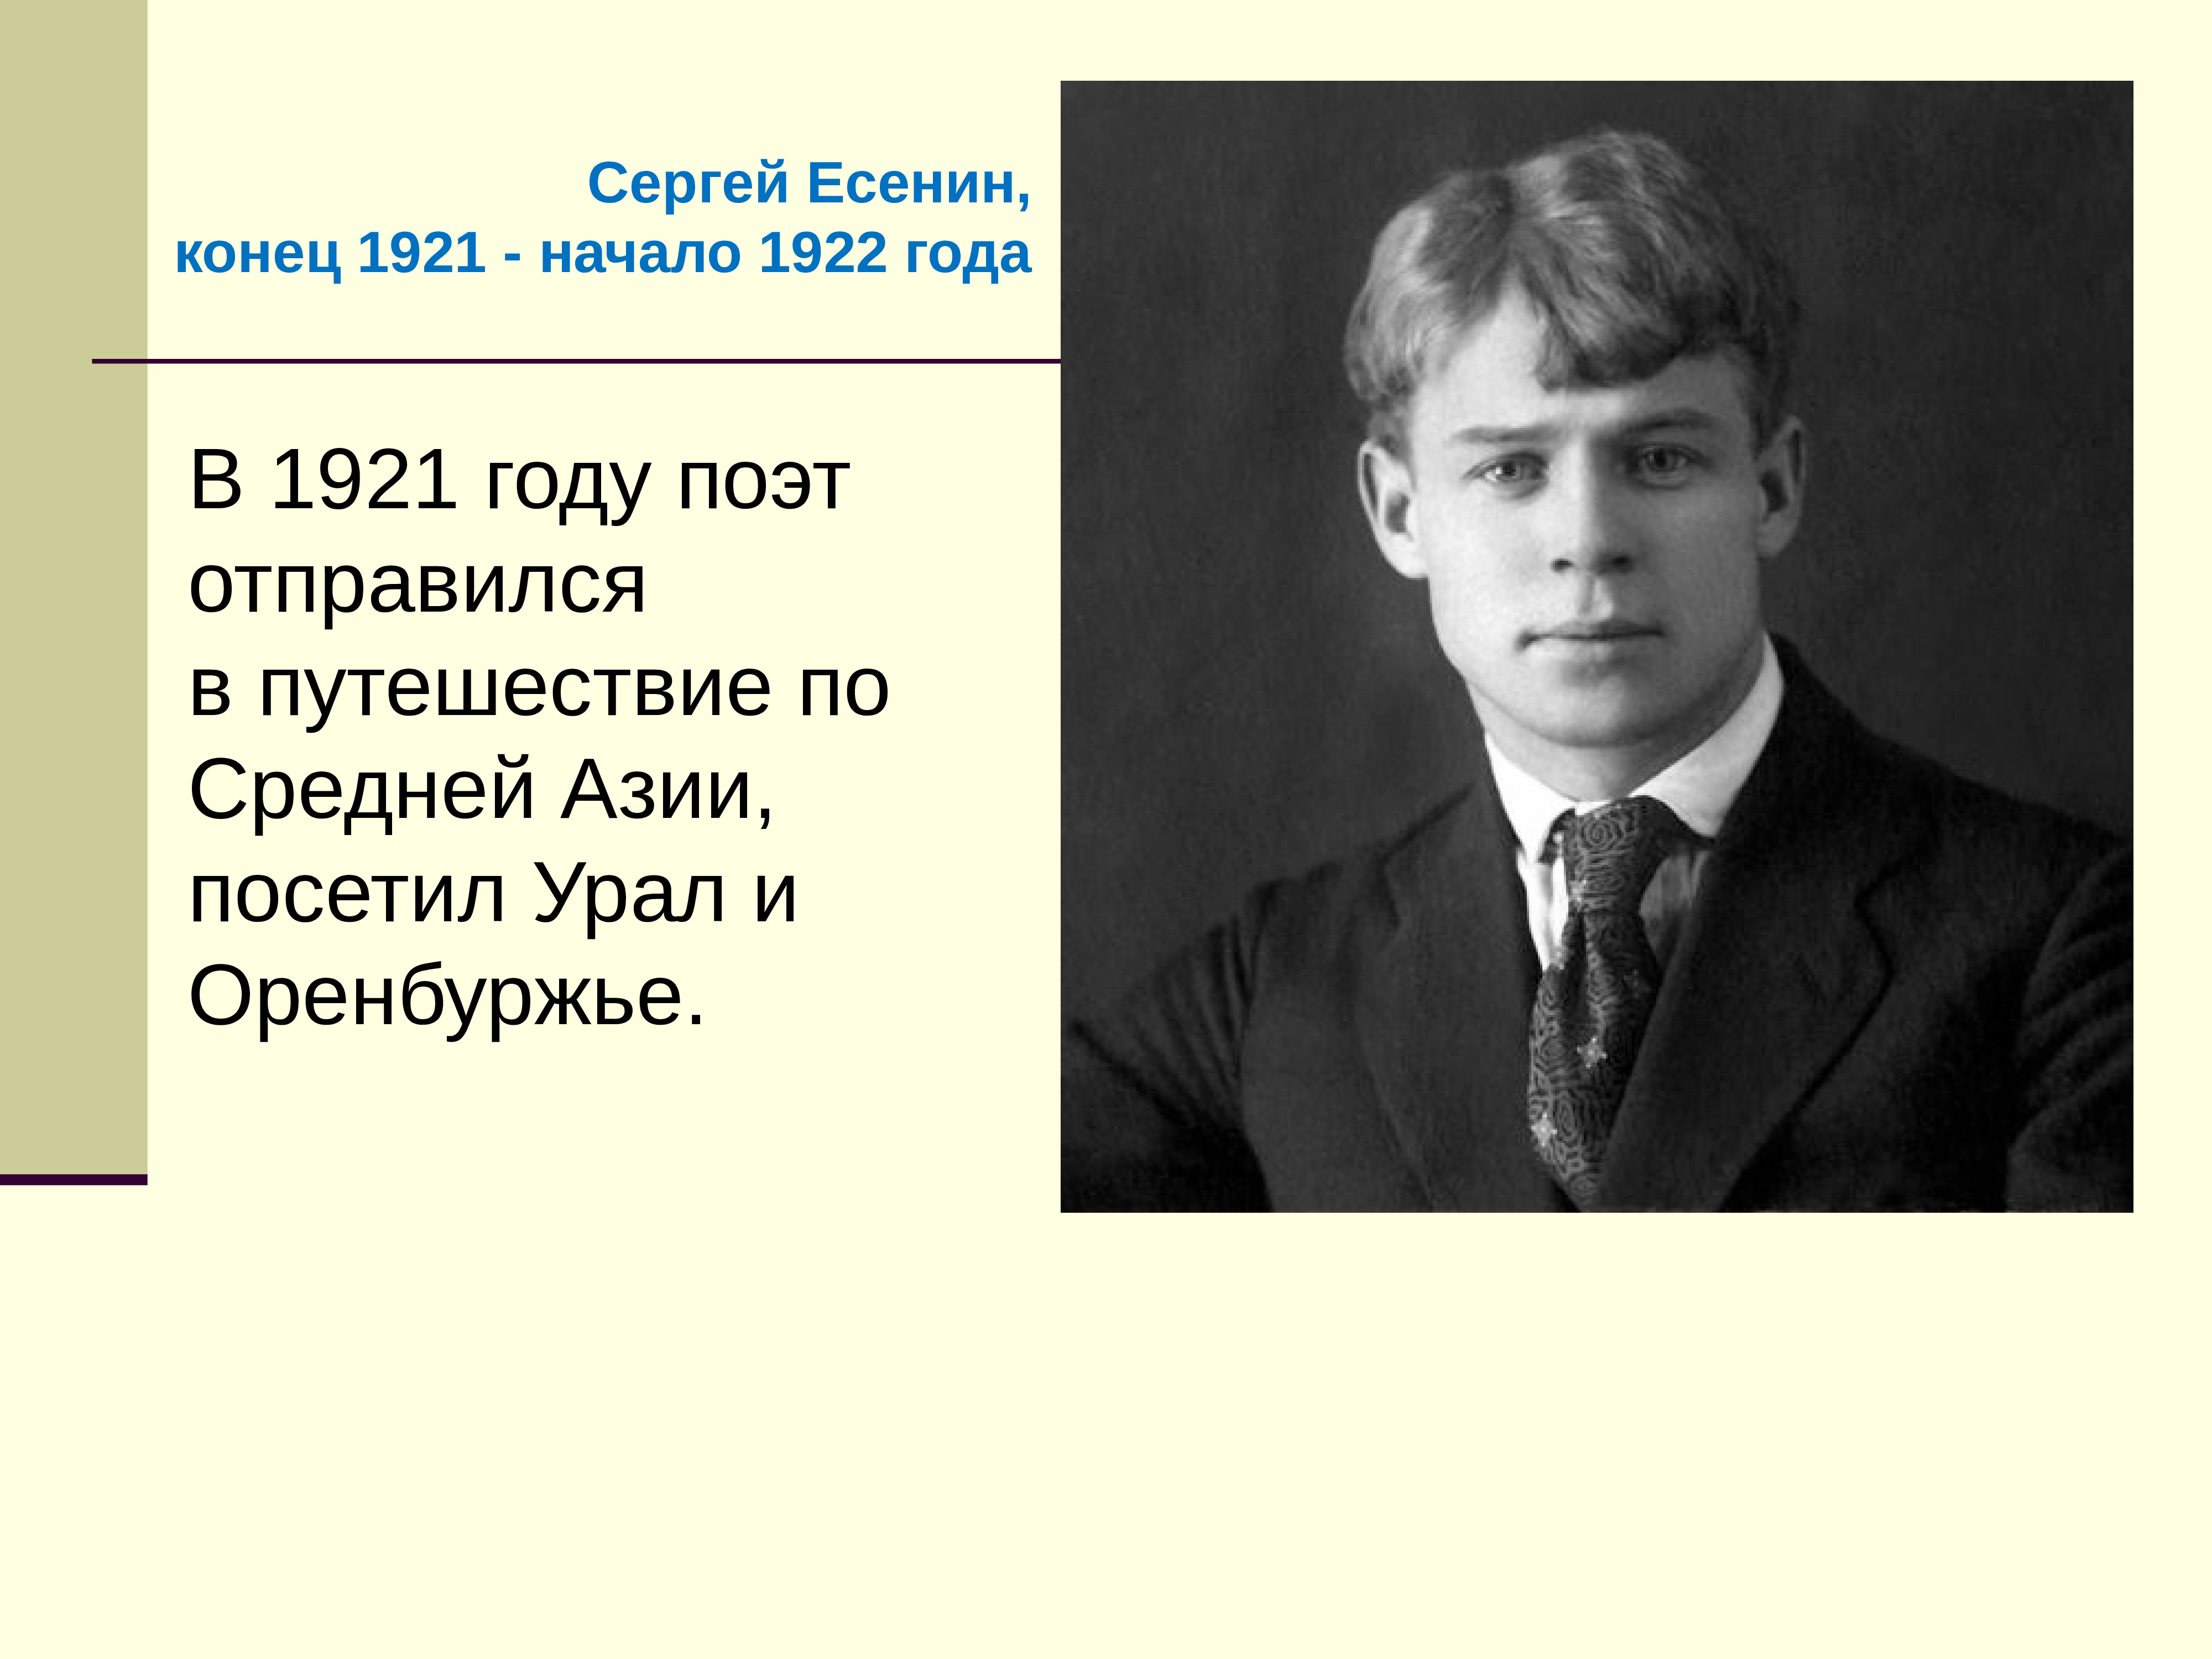 Сергей Есенин 1921